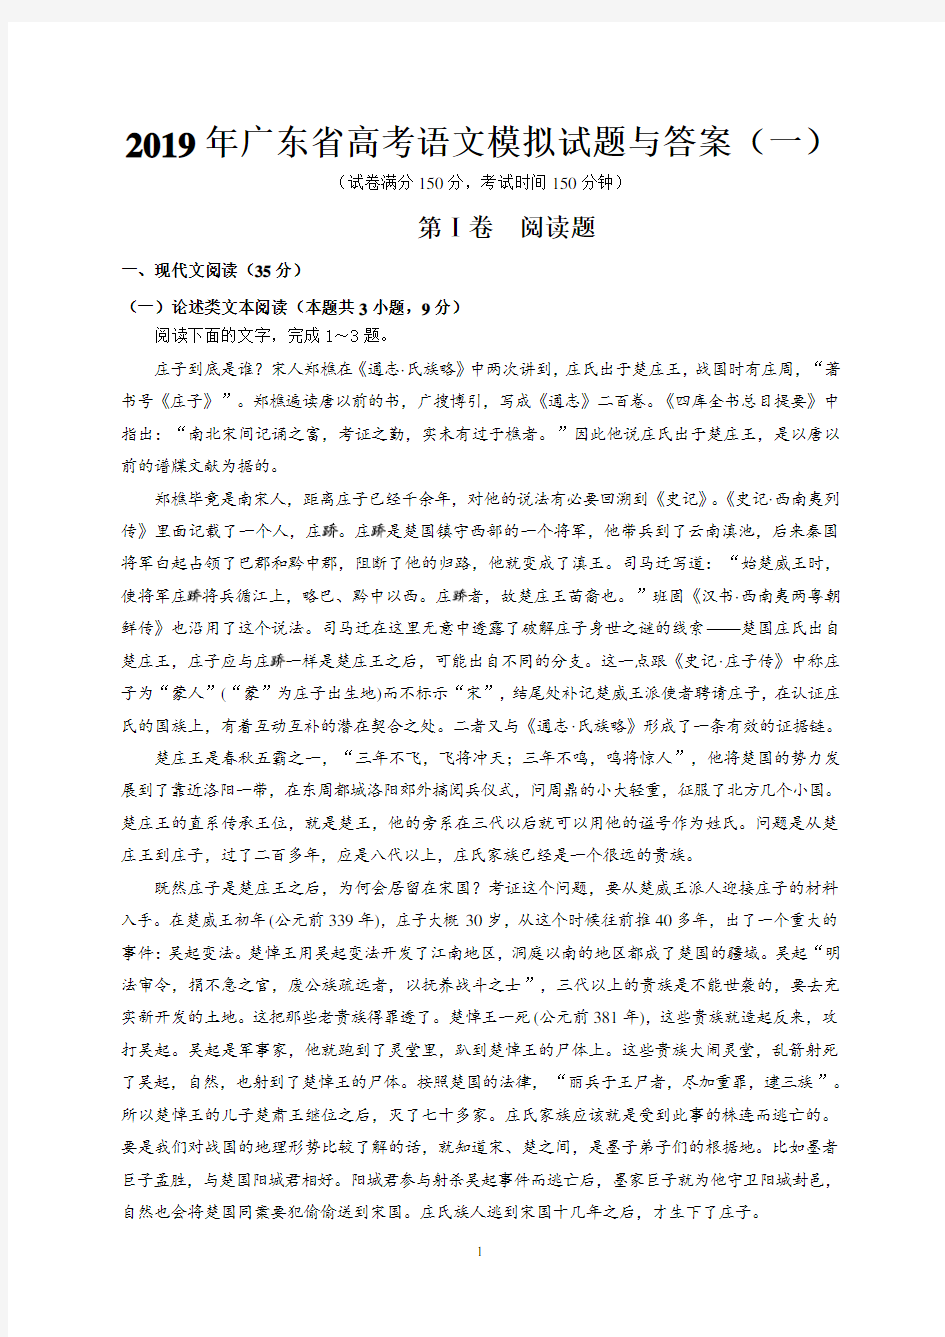 2019年广东省高考语文模拟试题与答案(一)